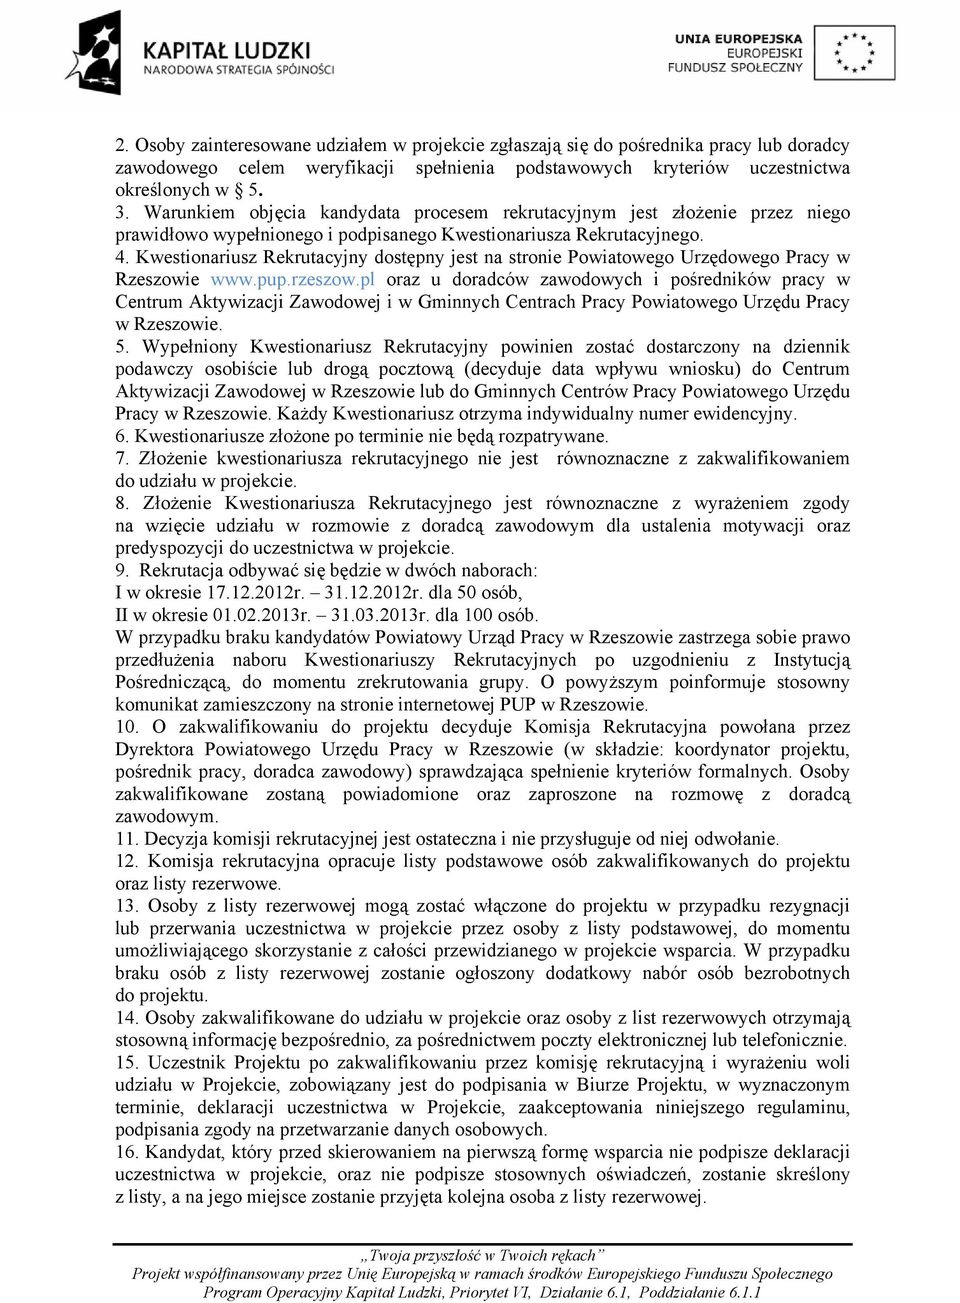 Kwestionariusz Rekrutacyjny dostępny jest na stronie Powiatowego Urzędowego Pracy w Rzeszowie www.pup.rzeszow.